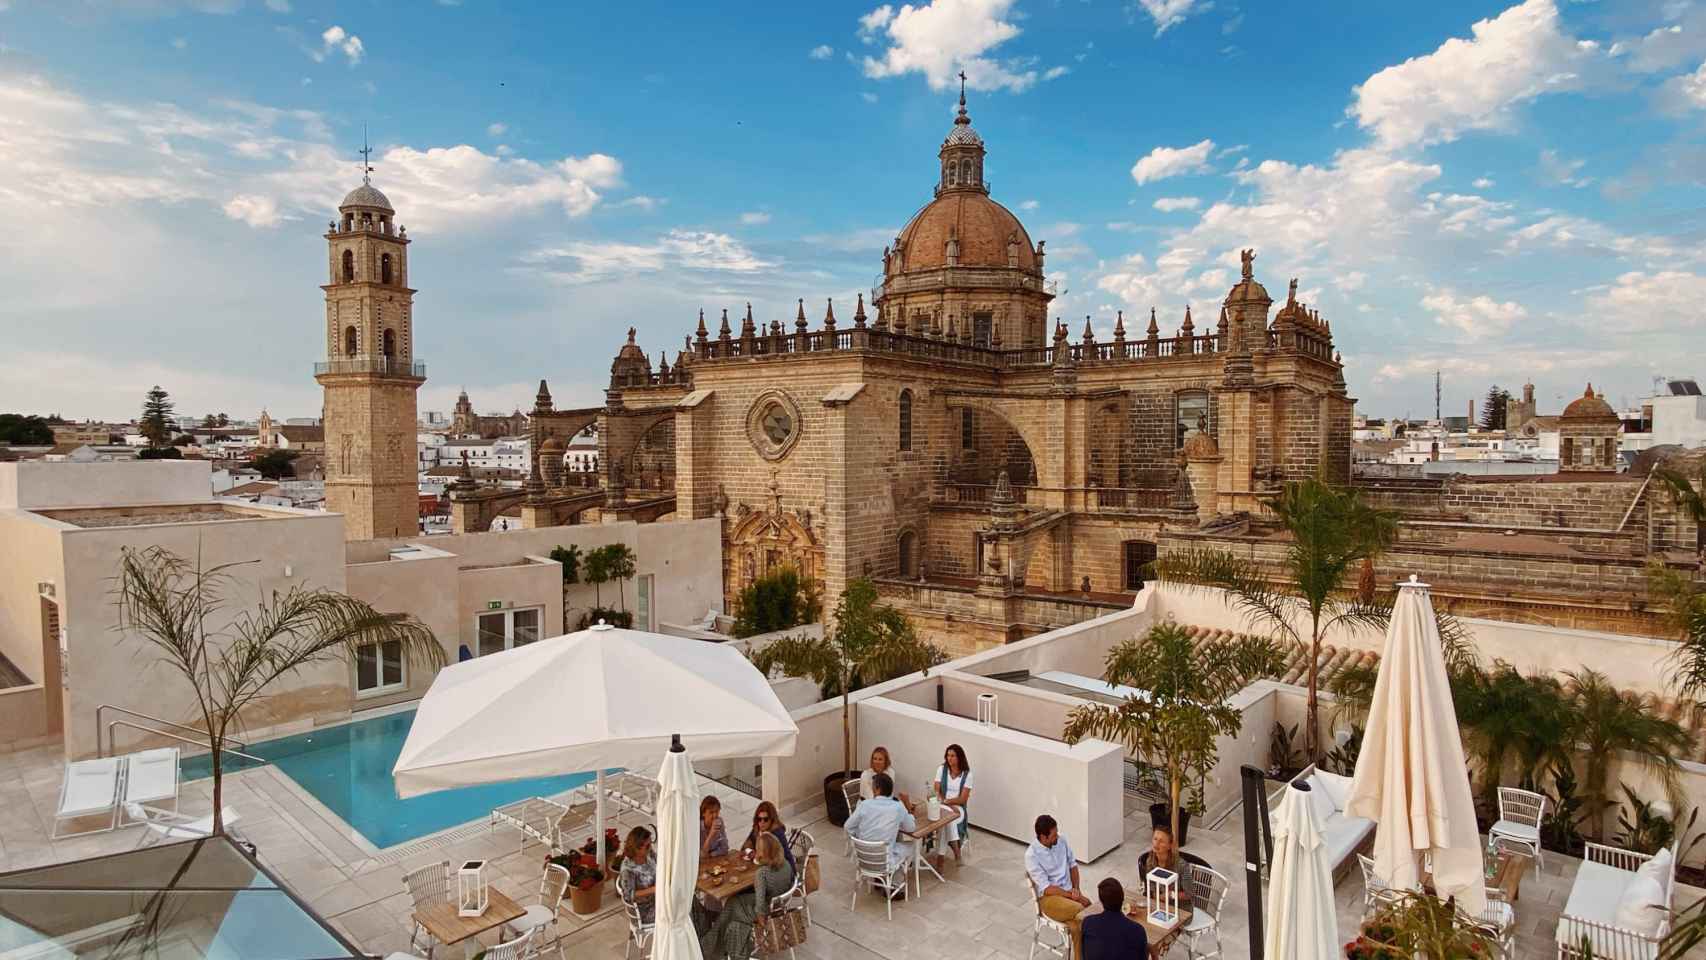 Este es el Mejor Hotel Enoturístico de España (donde puedes ‘tocar’ la catedral desde la piscina)